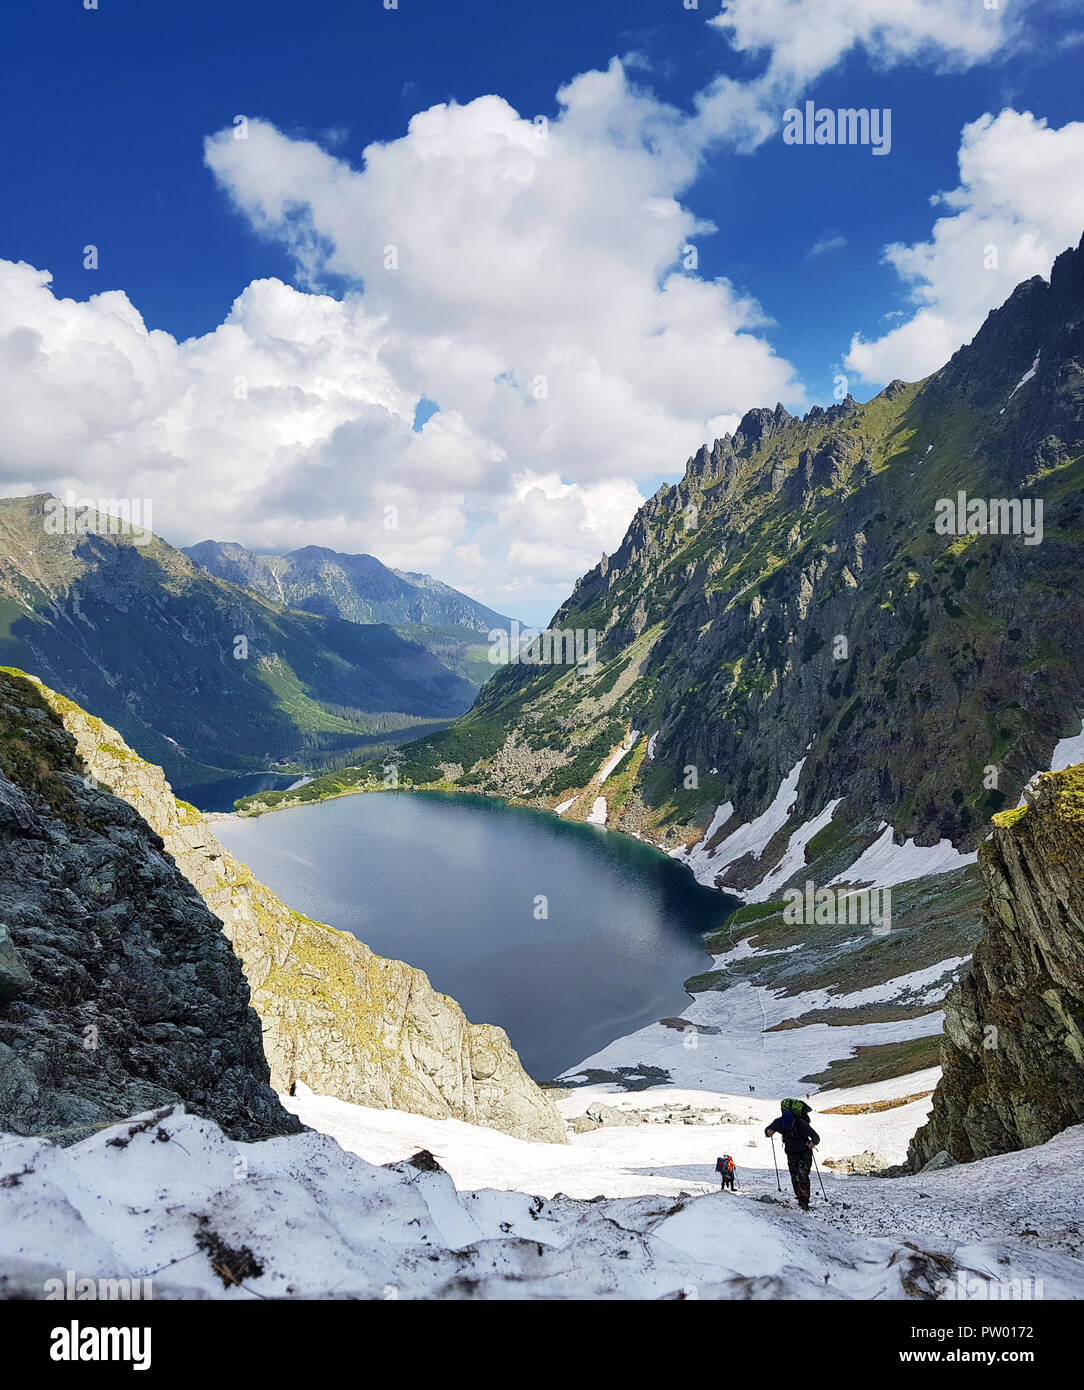 Morskie Oko. Hautes Tatras, Pologne, le 27 mai 2018. Magnifique paysage de montagne enneigée tops et le lac entre eux. Vue depuis la montagne Rysy. Banque D'Images